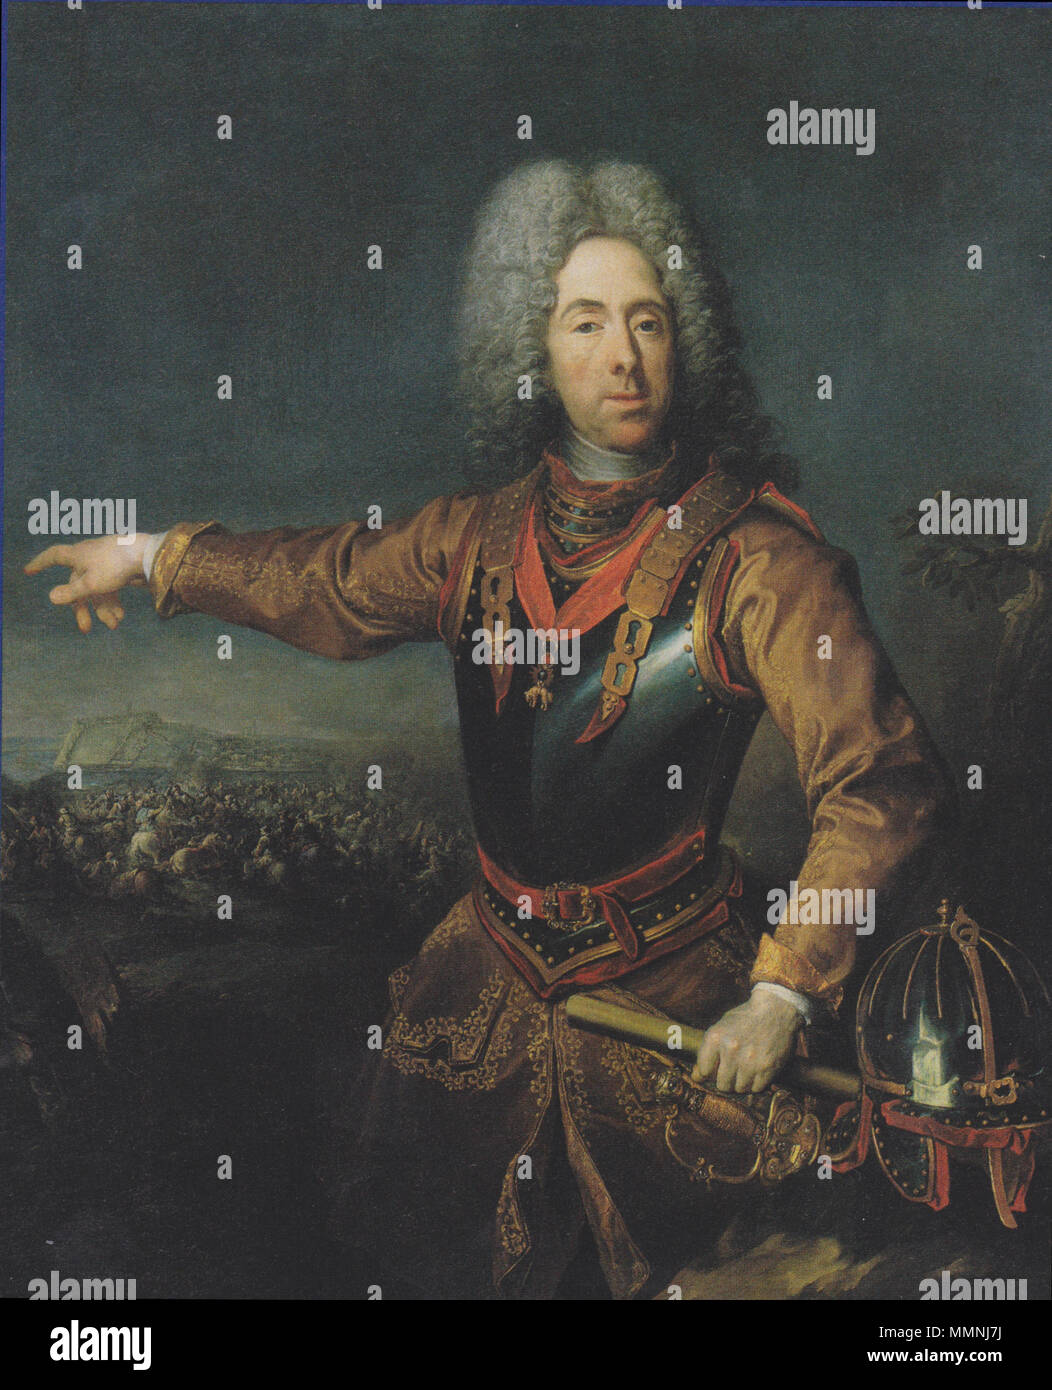 German: Prinz Eugen von Savoyen. after 1717. Jacob van Schuppen - Prinz Eugen von Savoyen Stock Photo